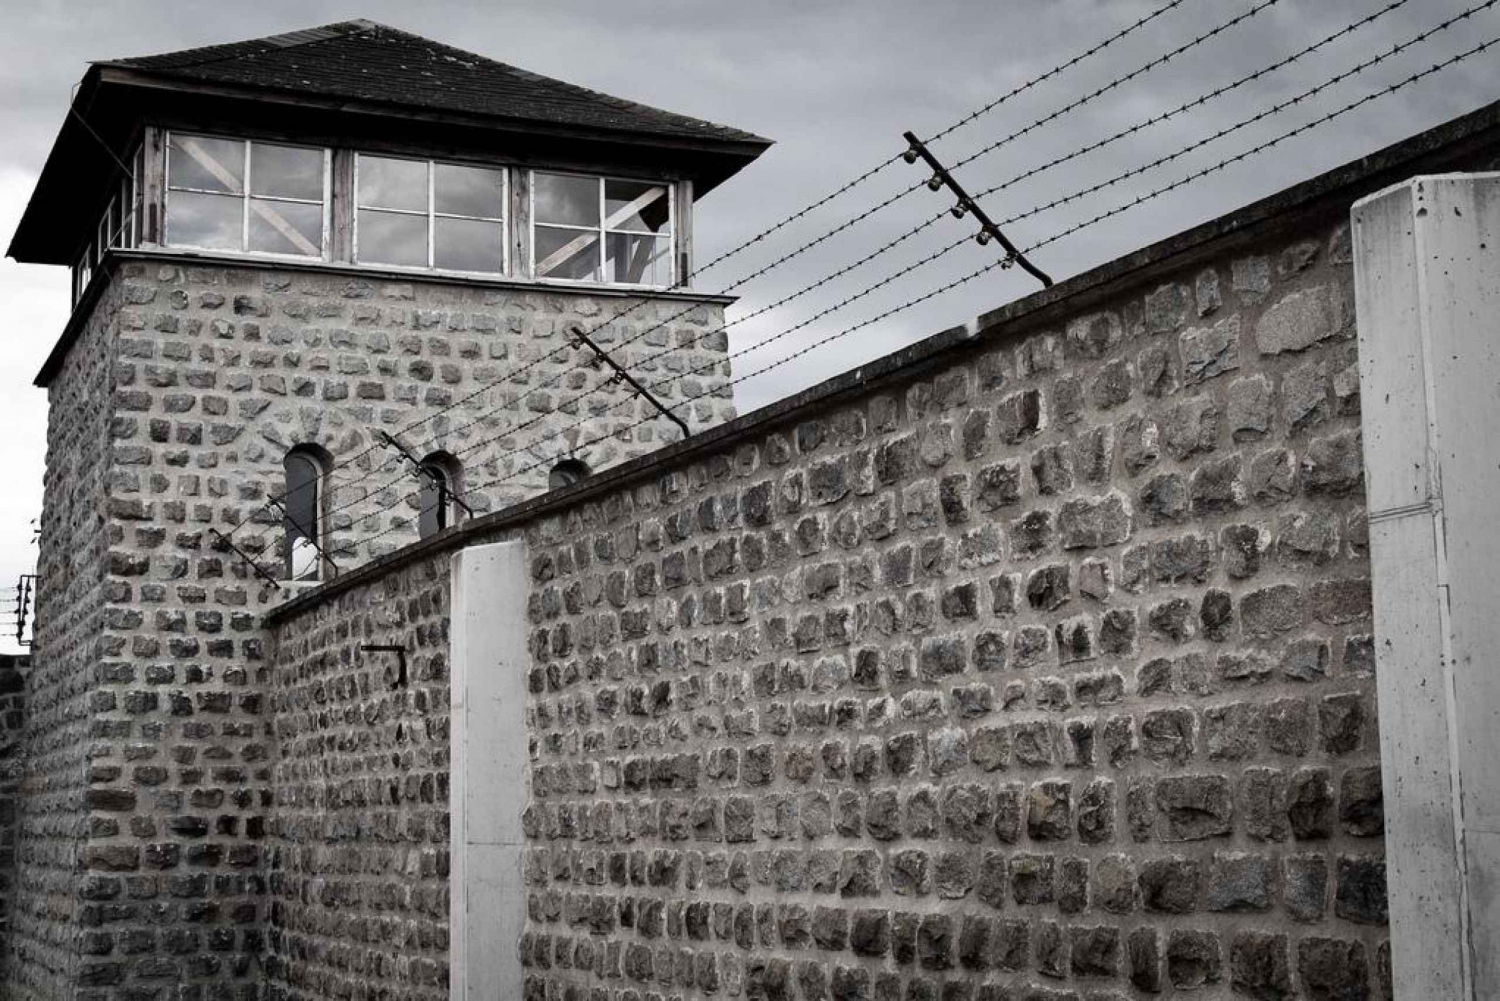 Wenen: Dagtrip naar het concentratiekampmonument Mauthausen